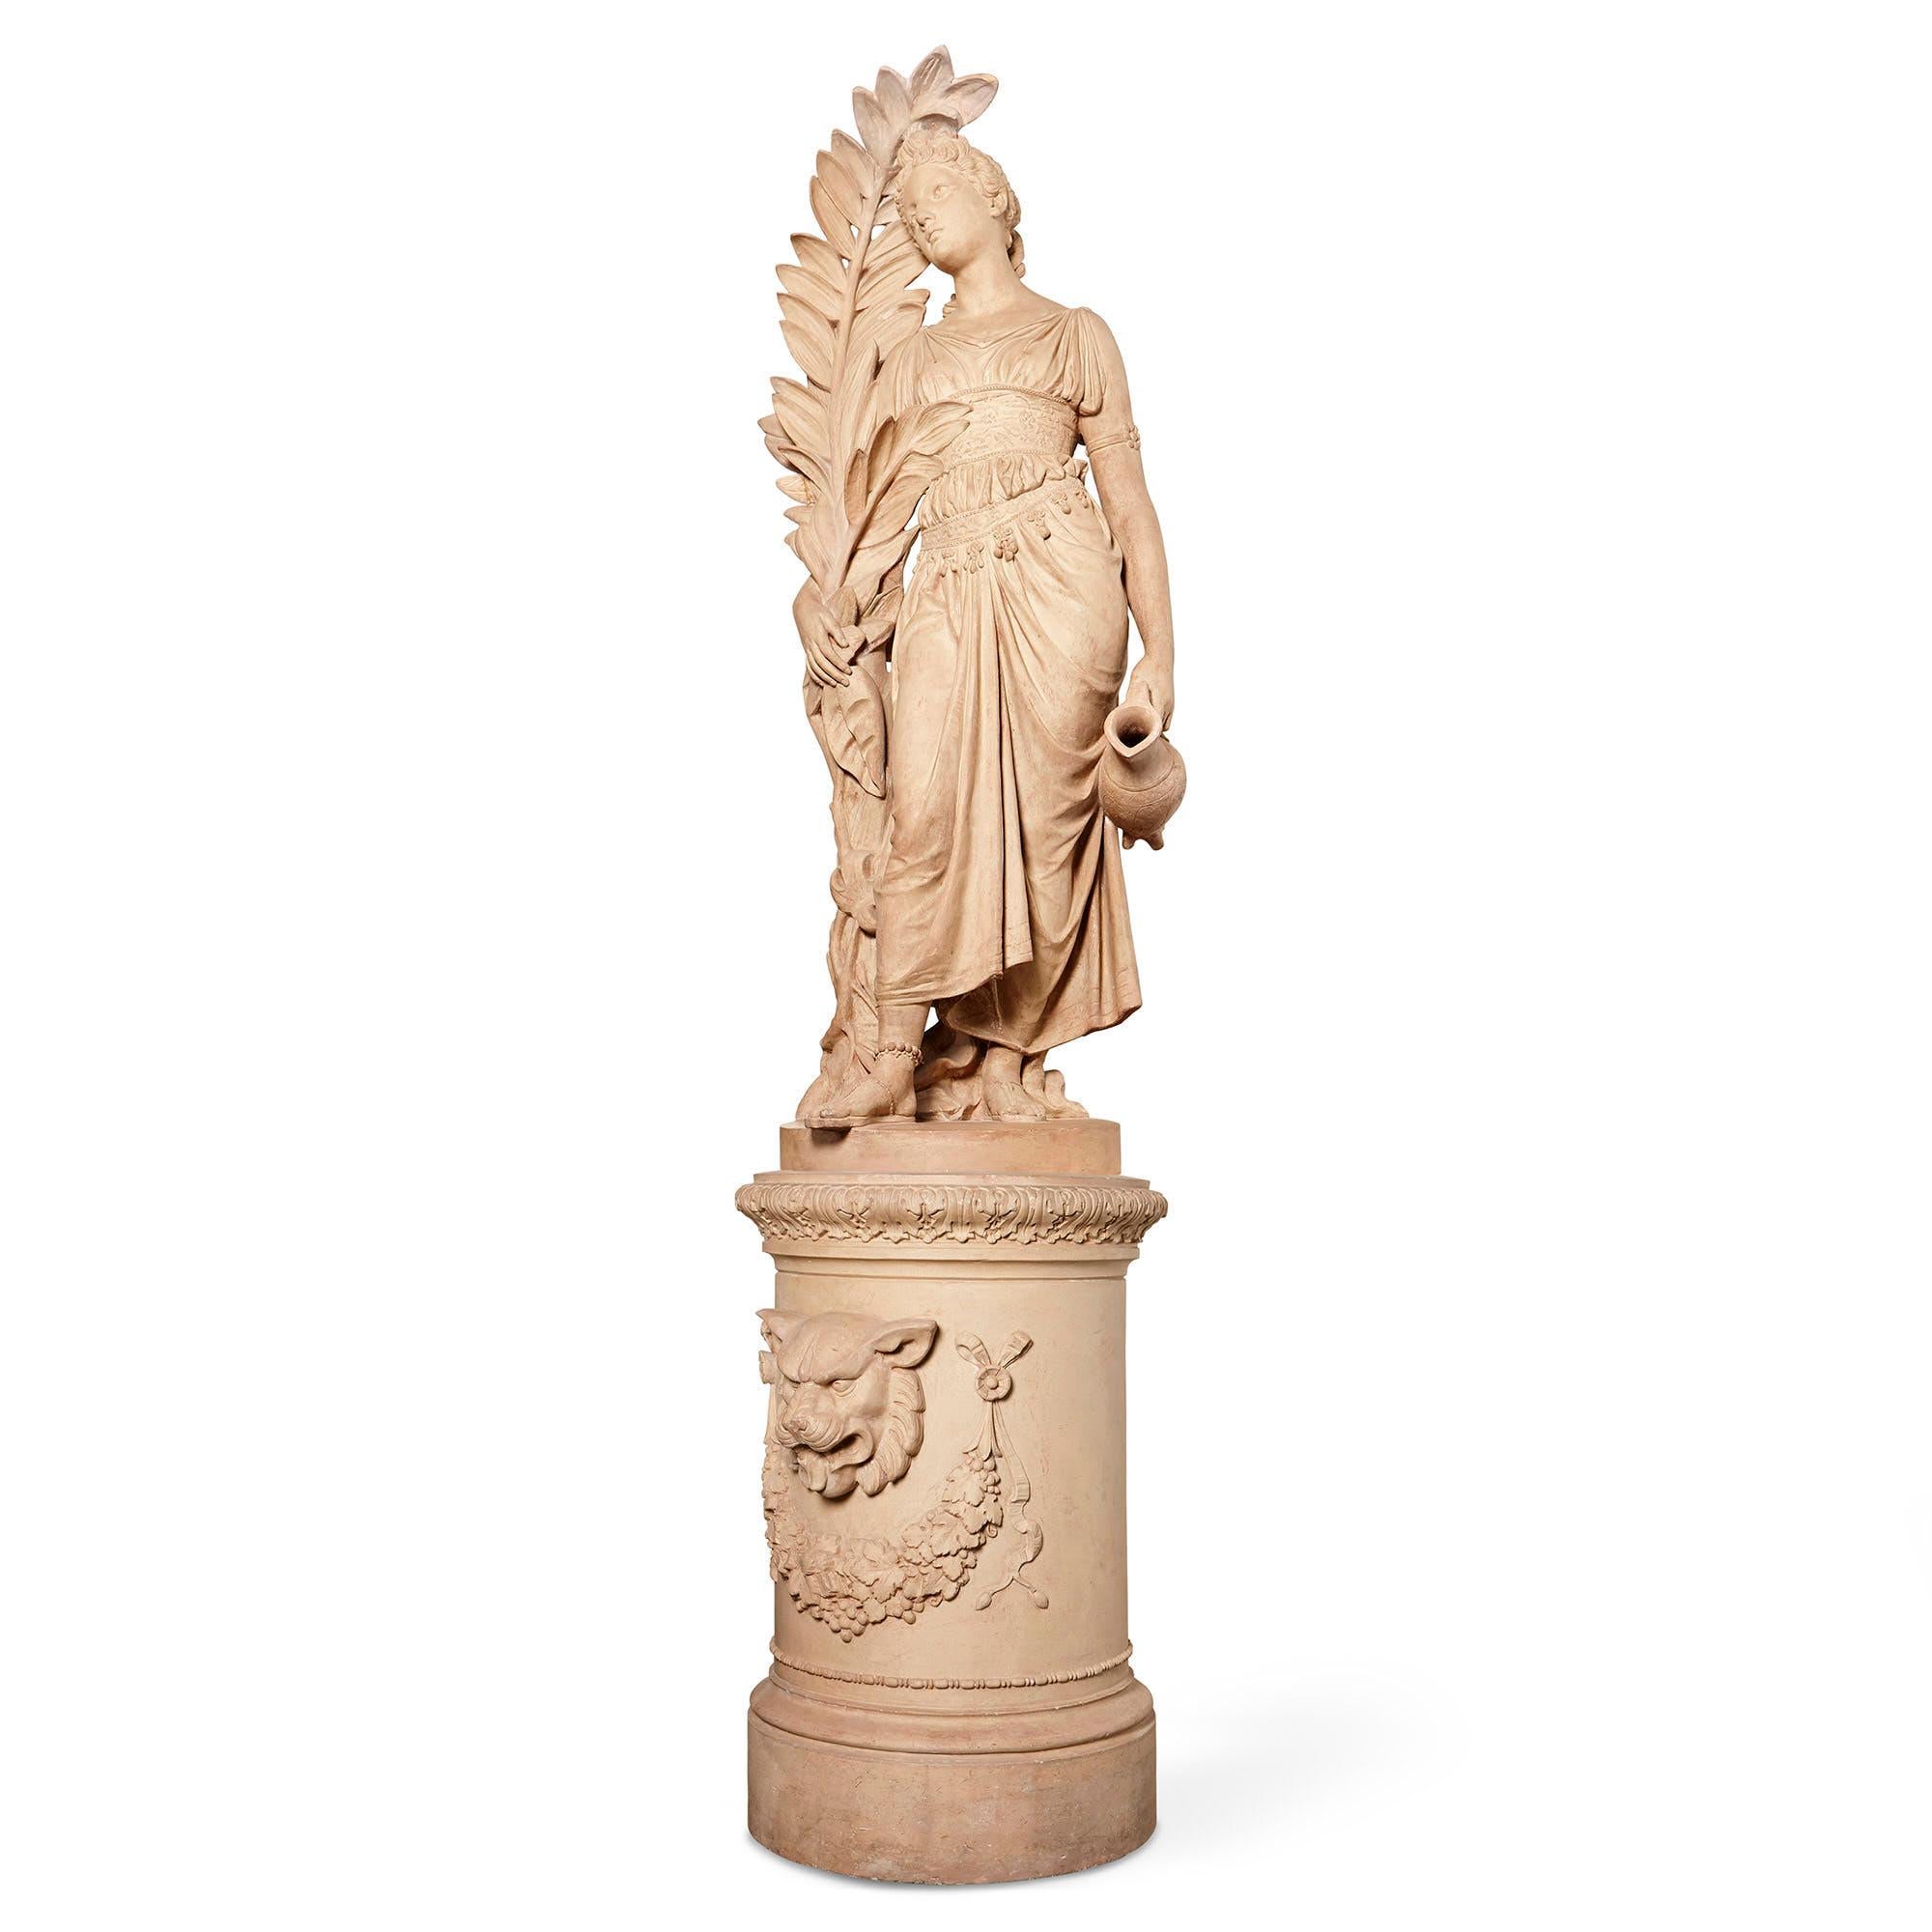 Diese lebensgroße Terrakotta-Skulptur der klassischen griechischen Figur Hebe ist ein wirklich schönes Stück. Hebe, die Tochter von Zeus und Hera, war die Göttin der Jugend und die Mundschenkin der olympischen Götter. Hebe ist als schöne junge Frau